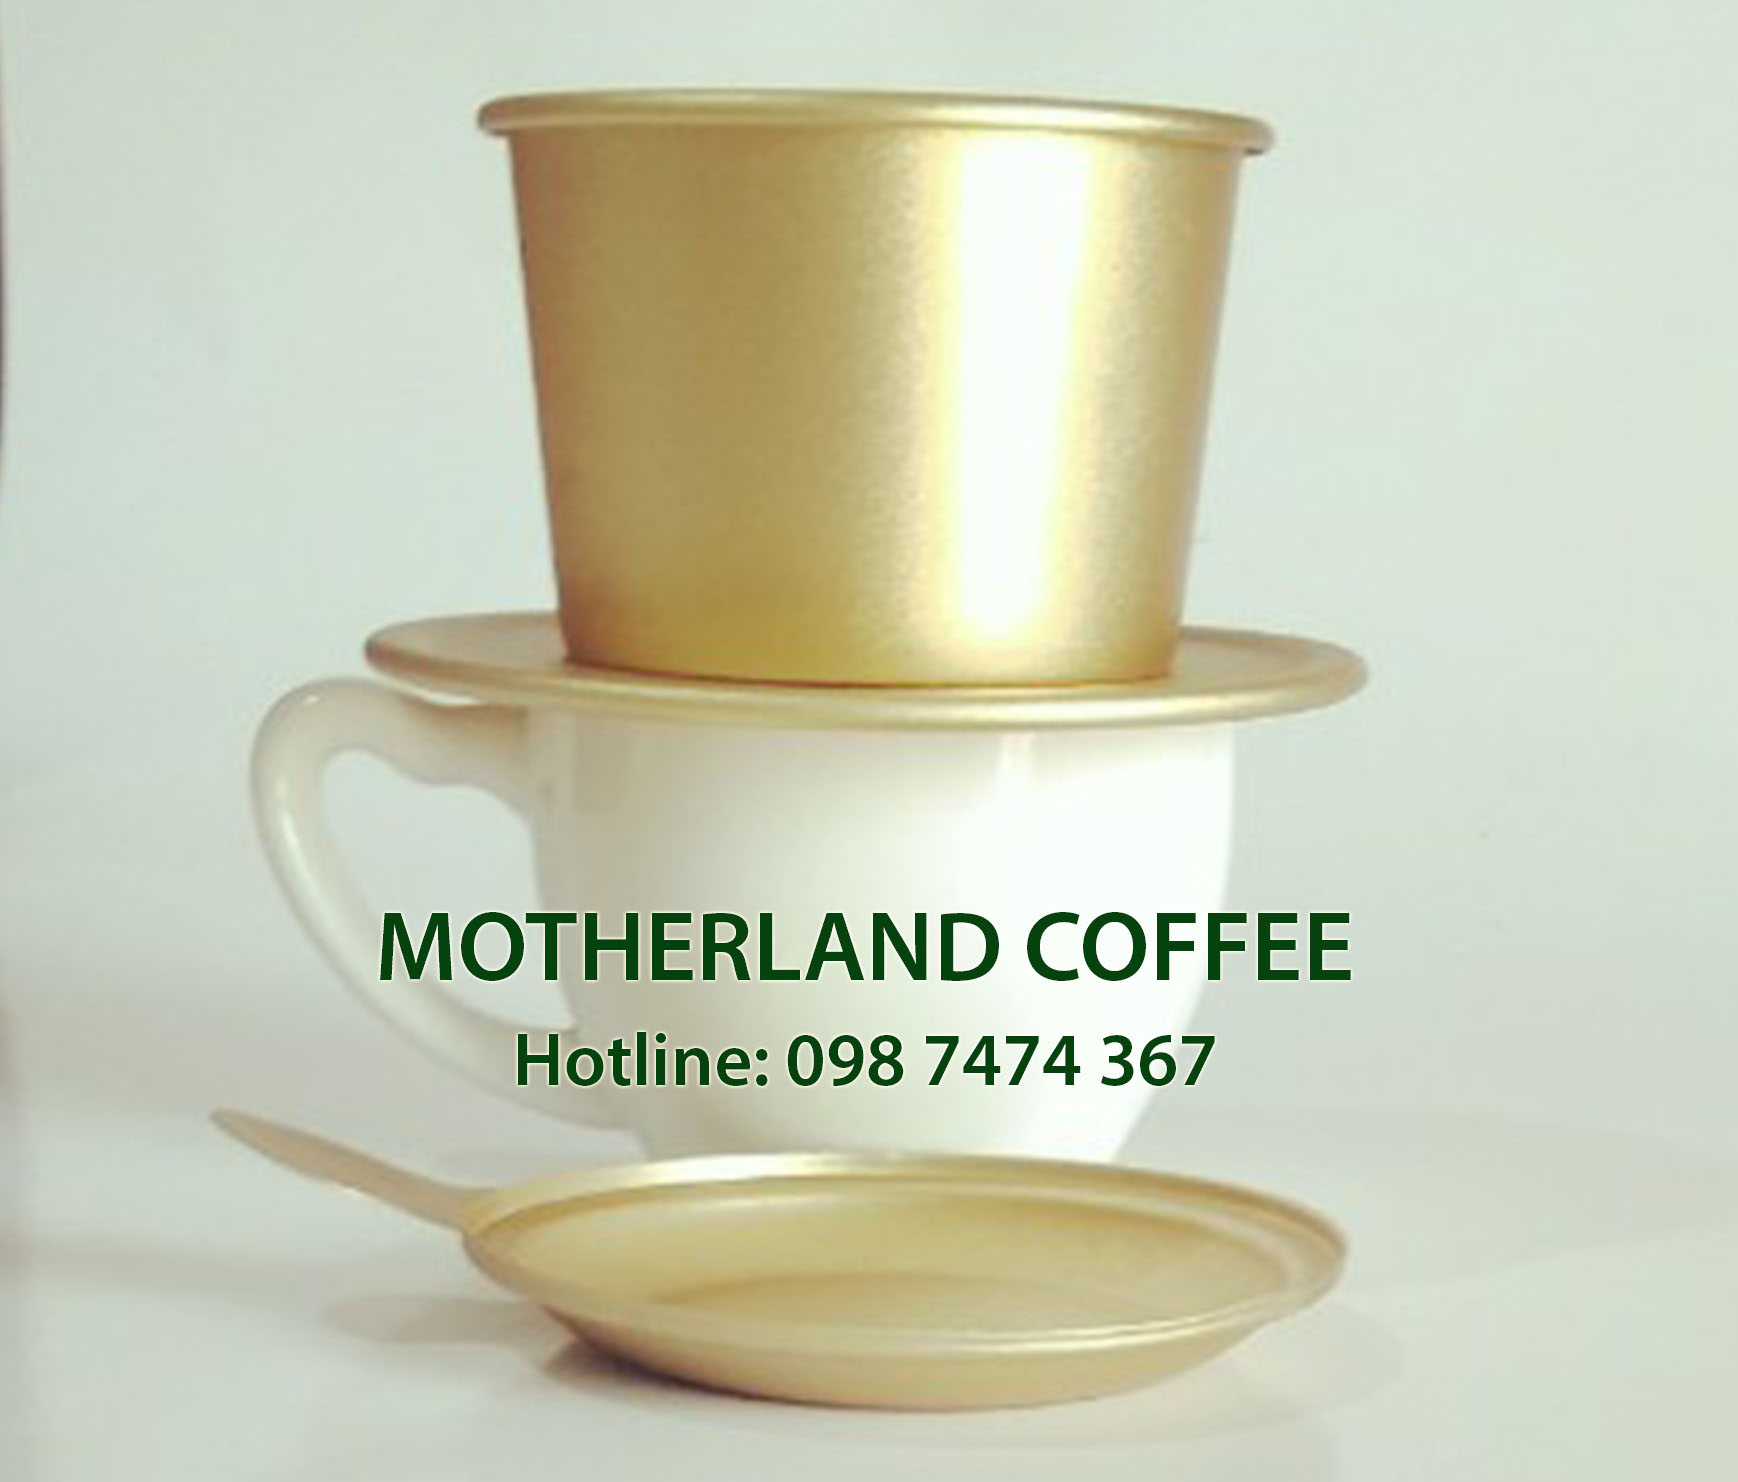 cà phê cao cấp chuyên uống đá - tách cà phê motherland